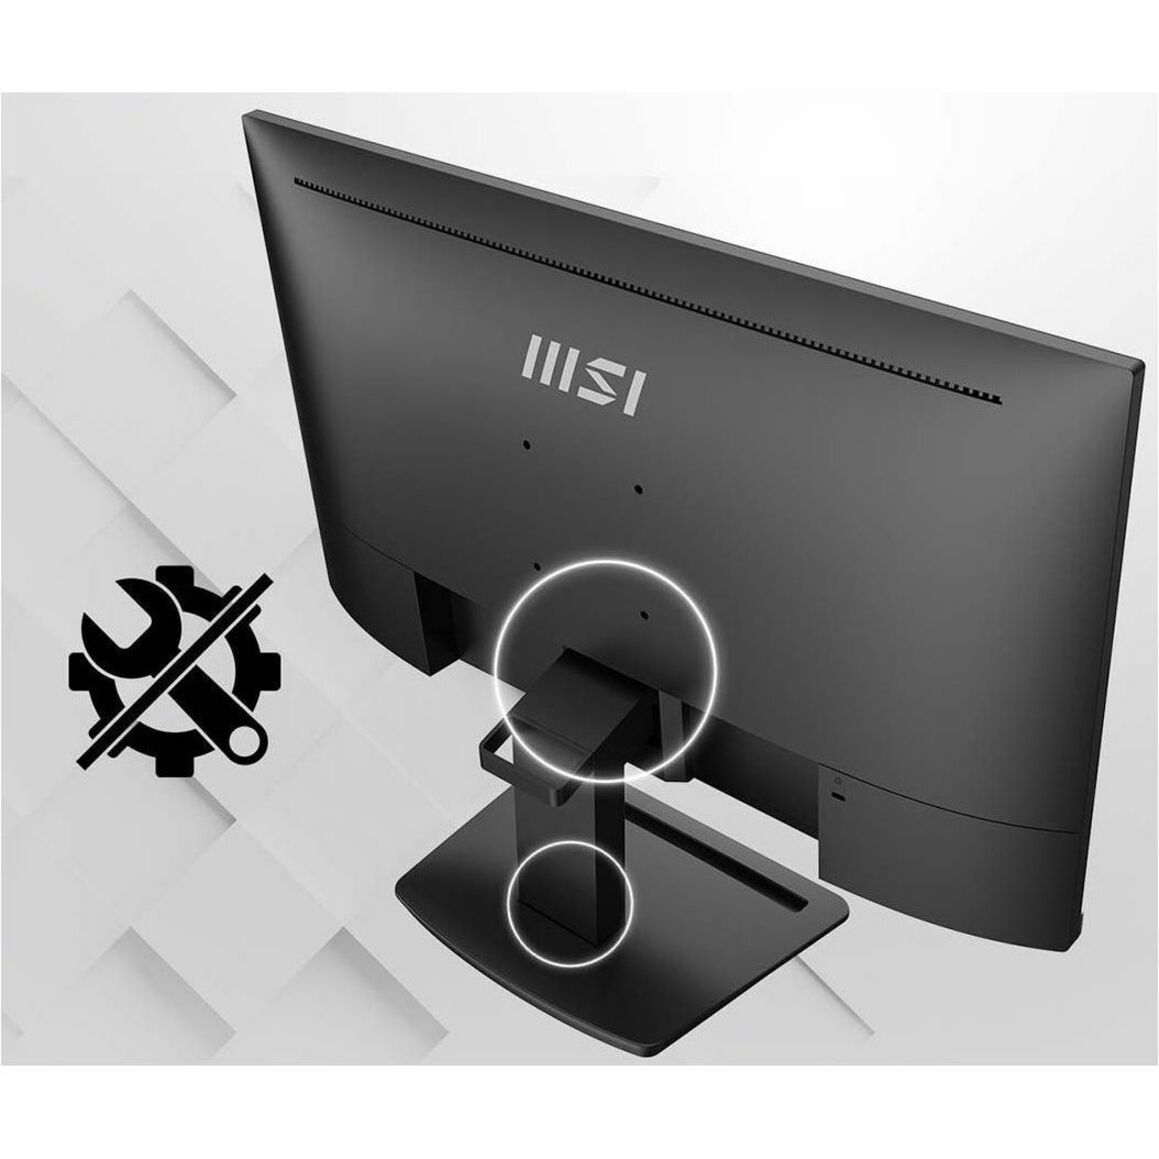 MSI Pro MP243X 23.8" Full HD LCD Monitor - 16:9 - Black